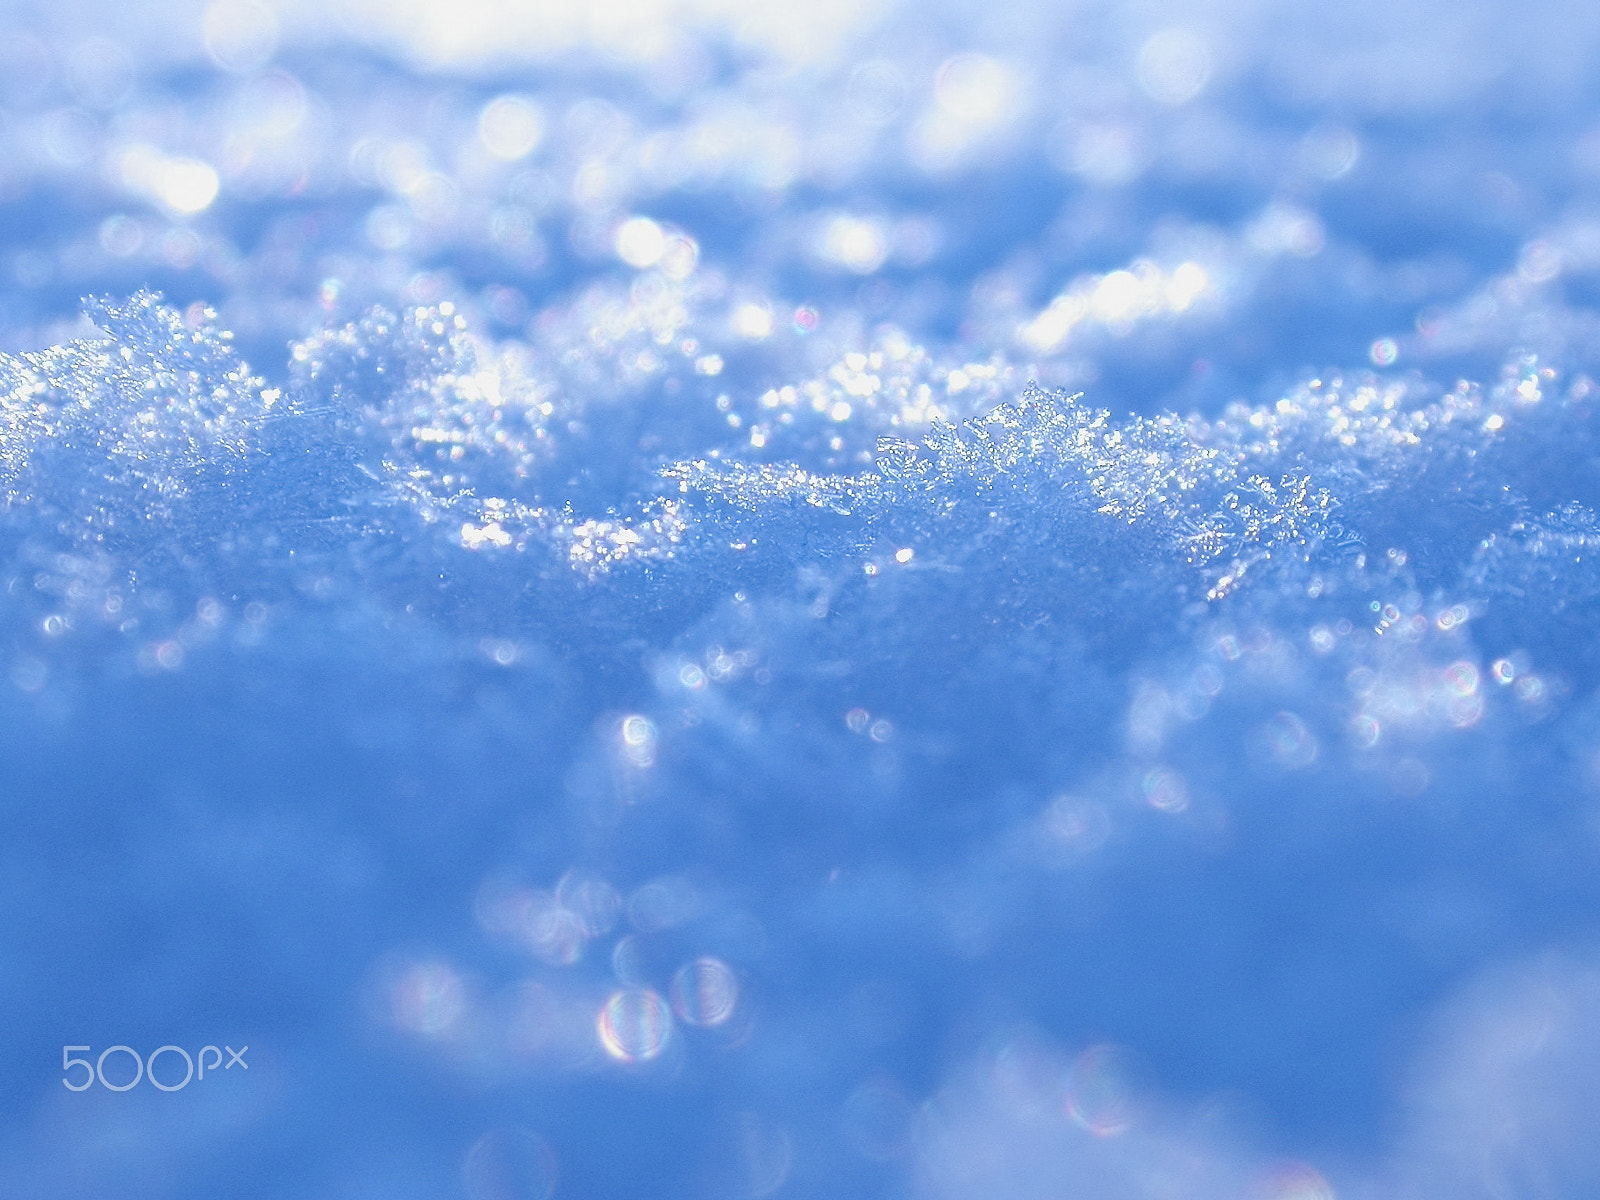 Nikon E4500 sample photo. Snow surface photography